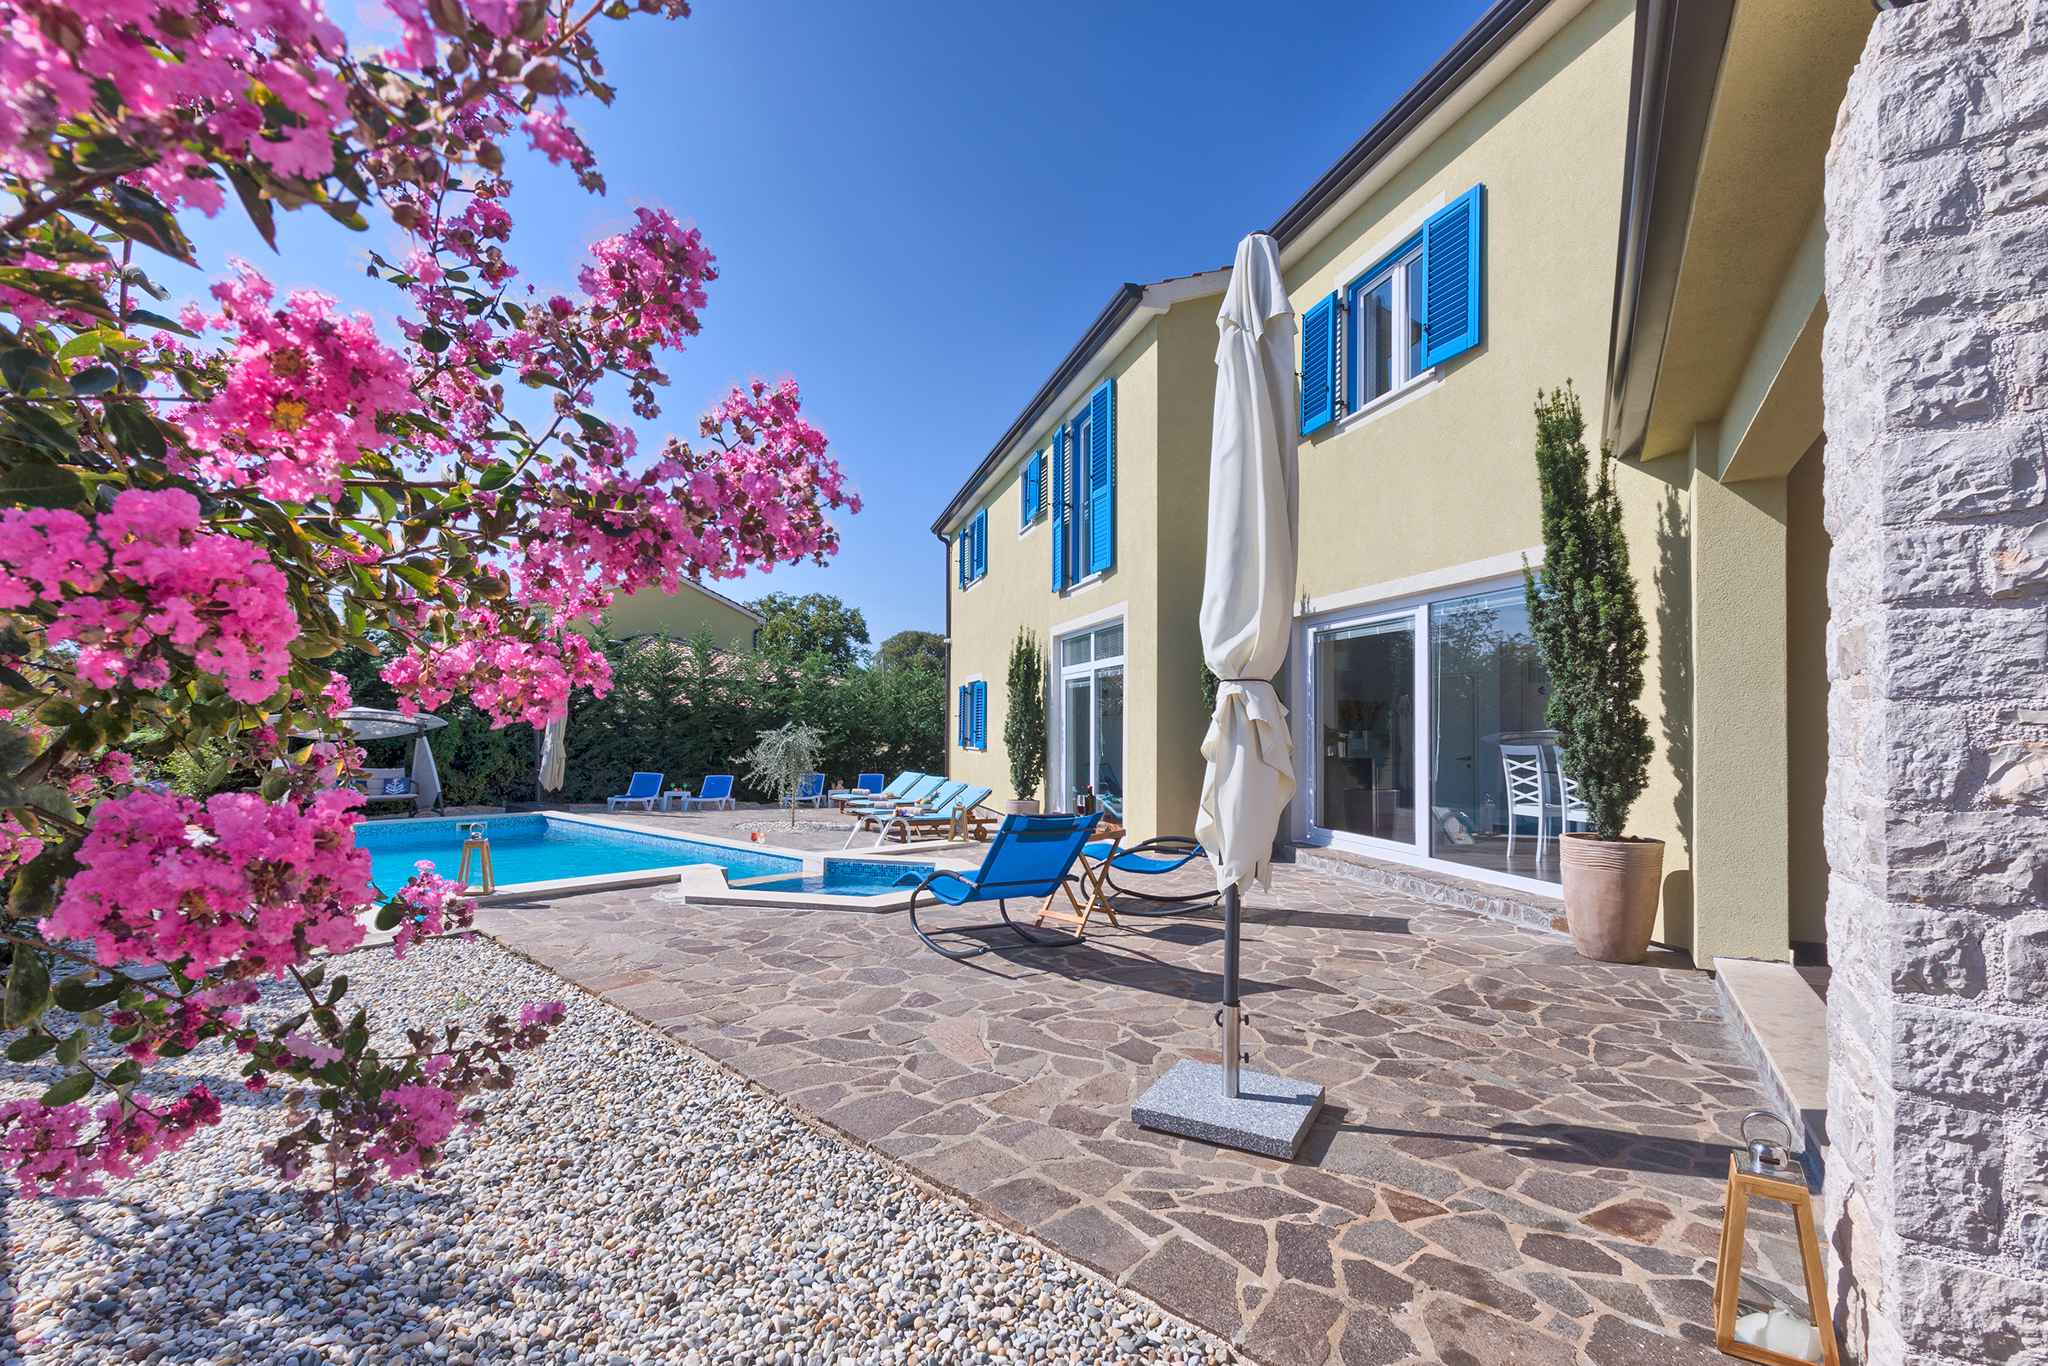 Villa mit Swimmingpool, Sauna und Spielplatz Ferienhaus in Kroatien